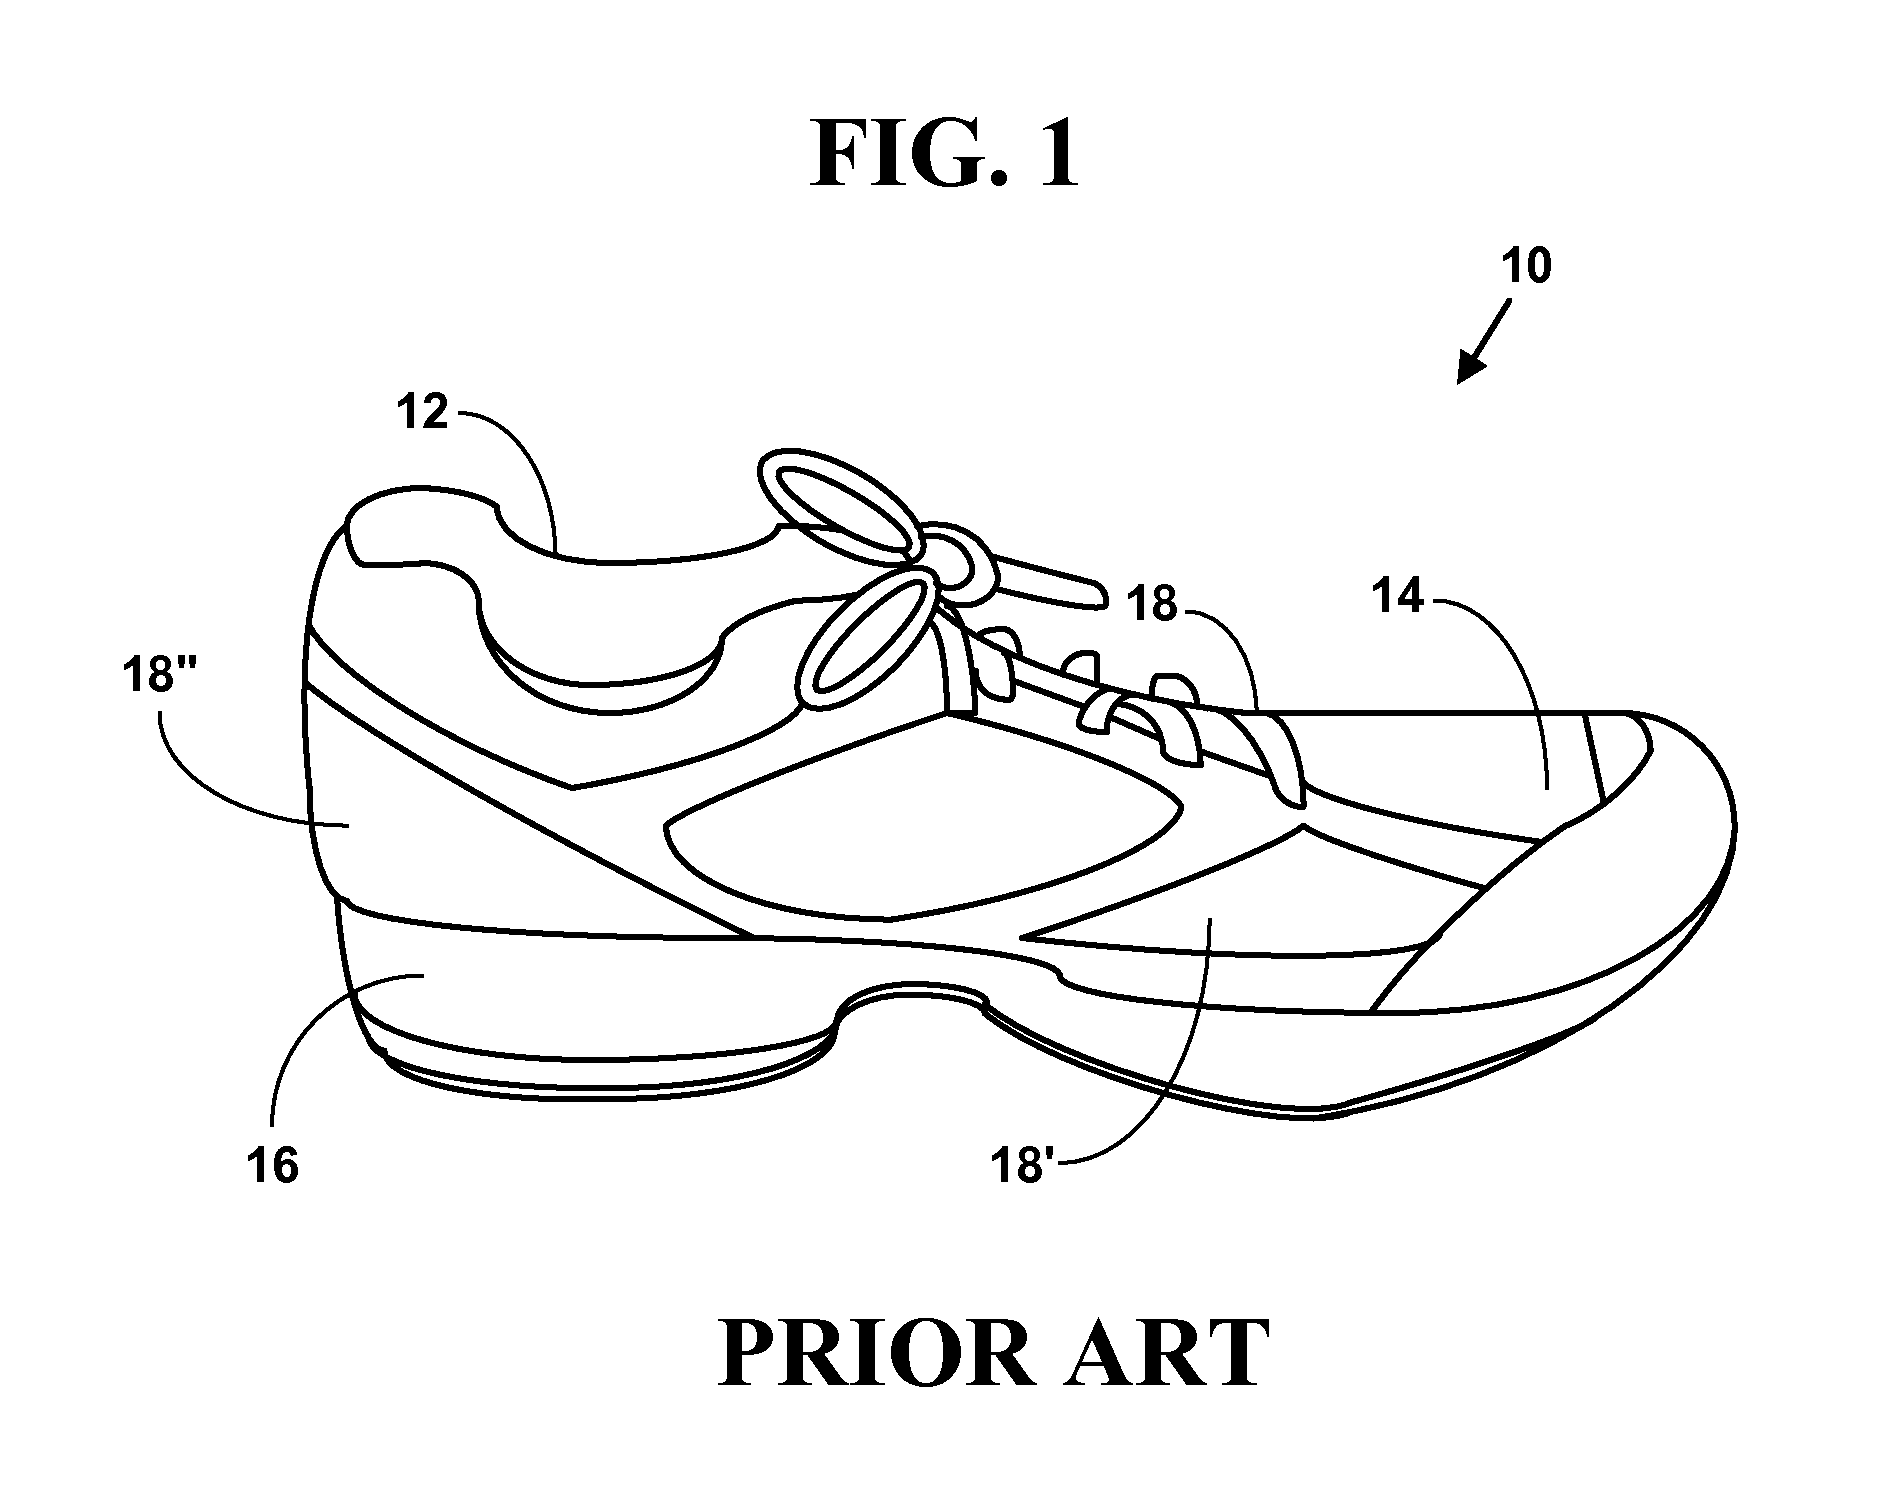 Portable shoe cover apparatus